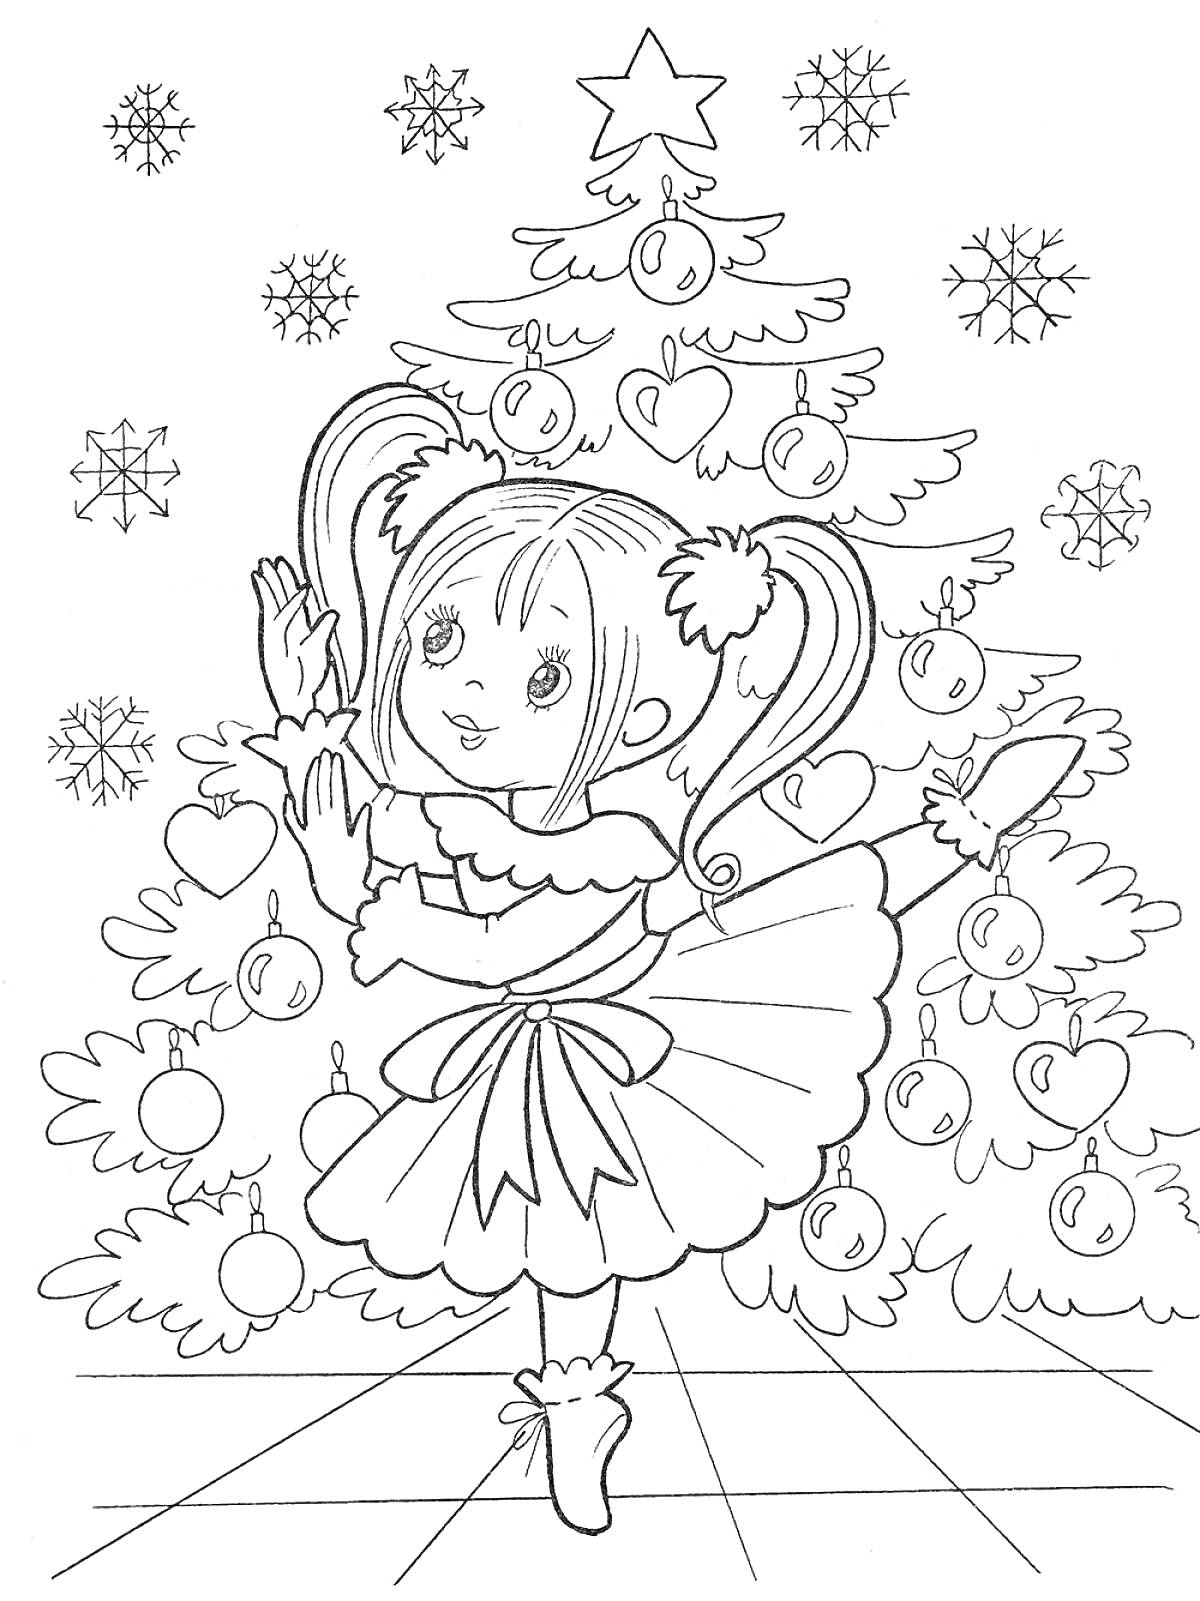 Раскраска Девочка в платье на фоне новогодней елки с украшениями и снежинками